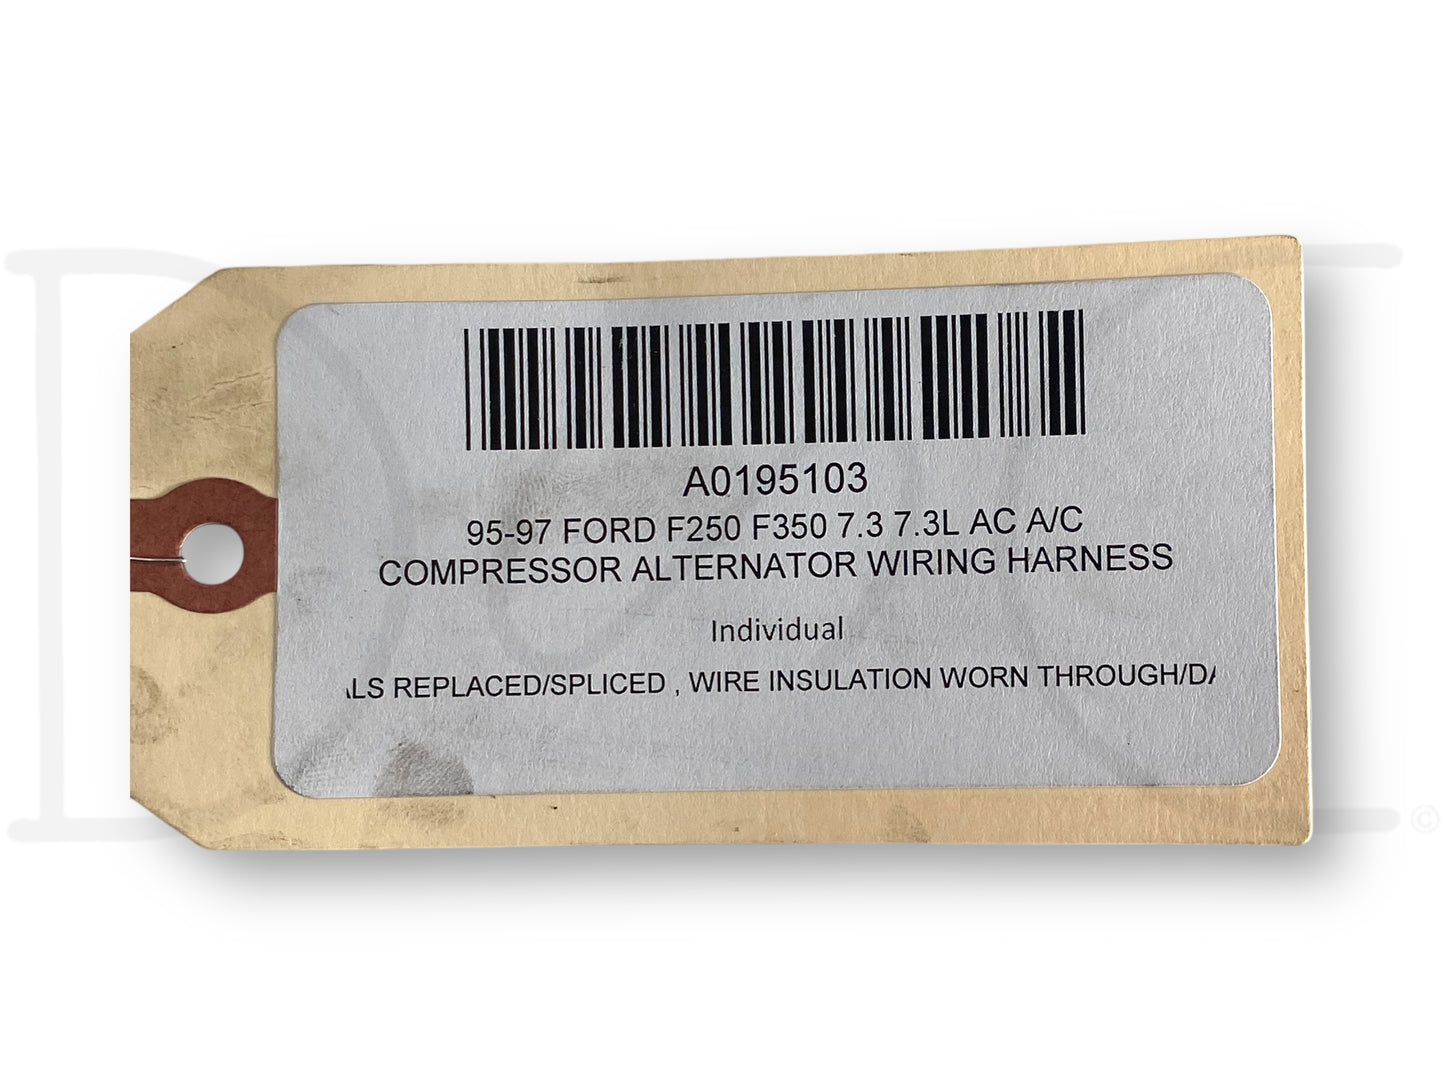 95-97 Ford F250 F350 7.3 7.3L Ac A/C Compressor Alternator Wiring Harness *Blem*